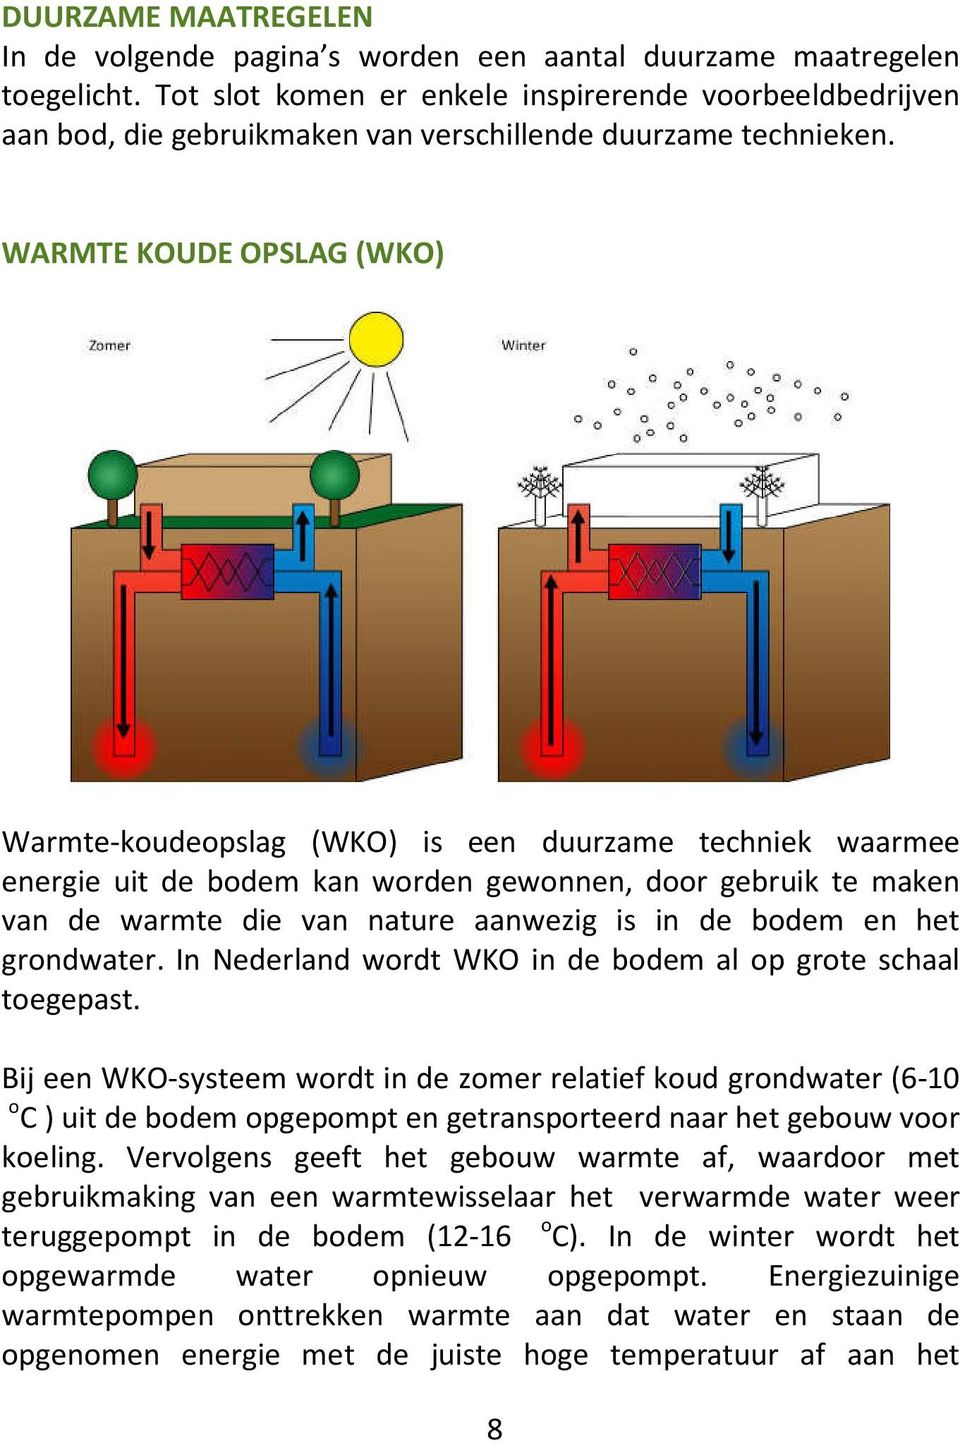 WARMTE KOUDE OPSLAG (WKO) Warmte-koudeopslag (WKO) is een duurzame techniek waarmee energie uit de bodem kan worden gewonnen, door gebruik te maken van de warmte die van nature aanwezig is in de